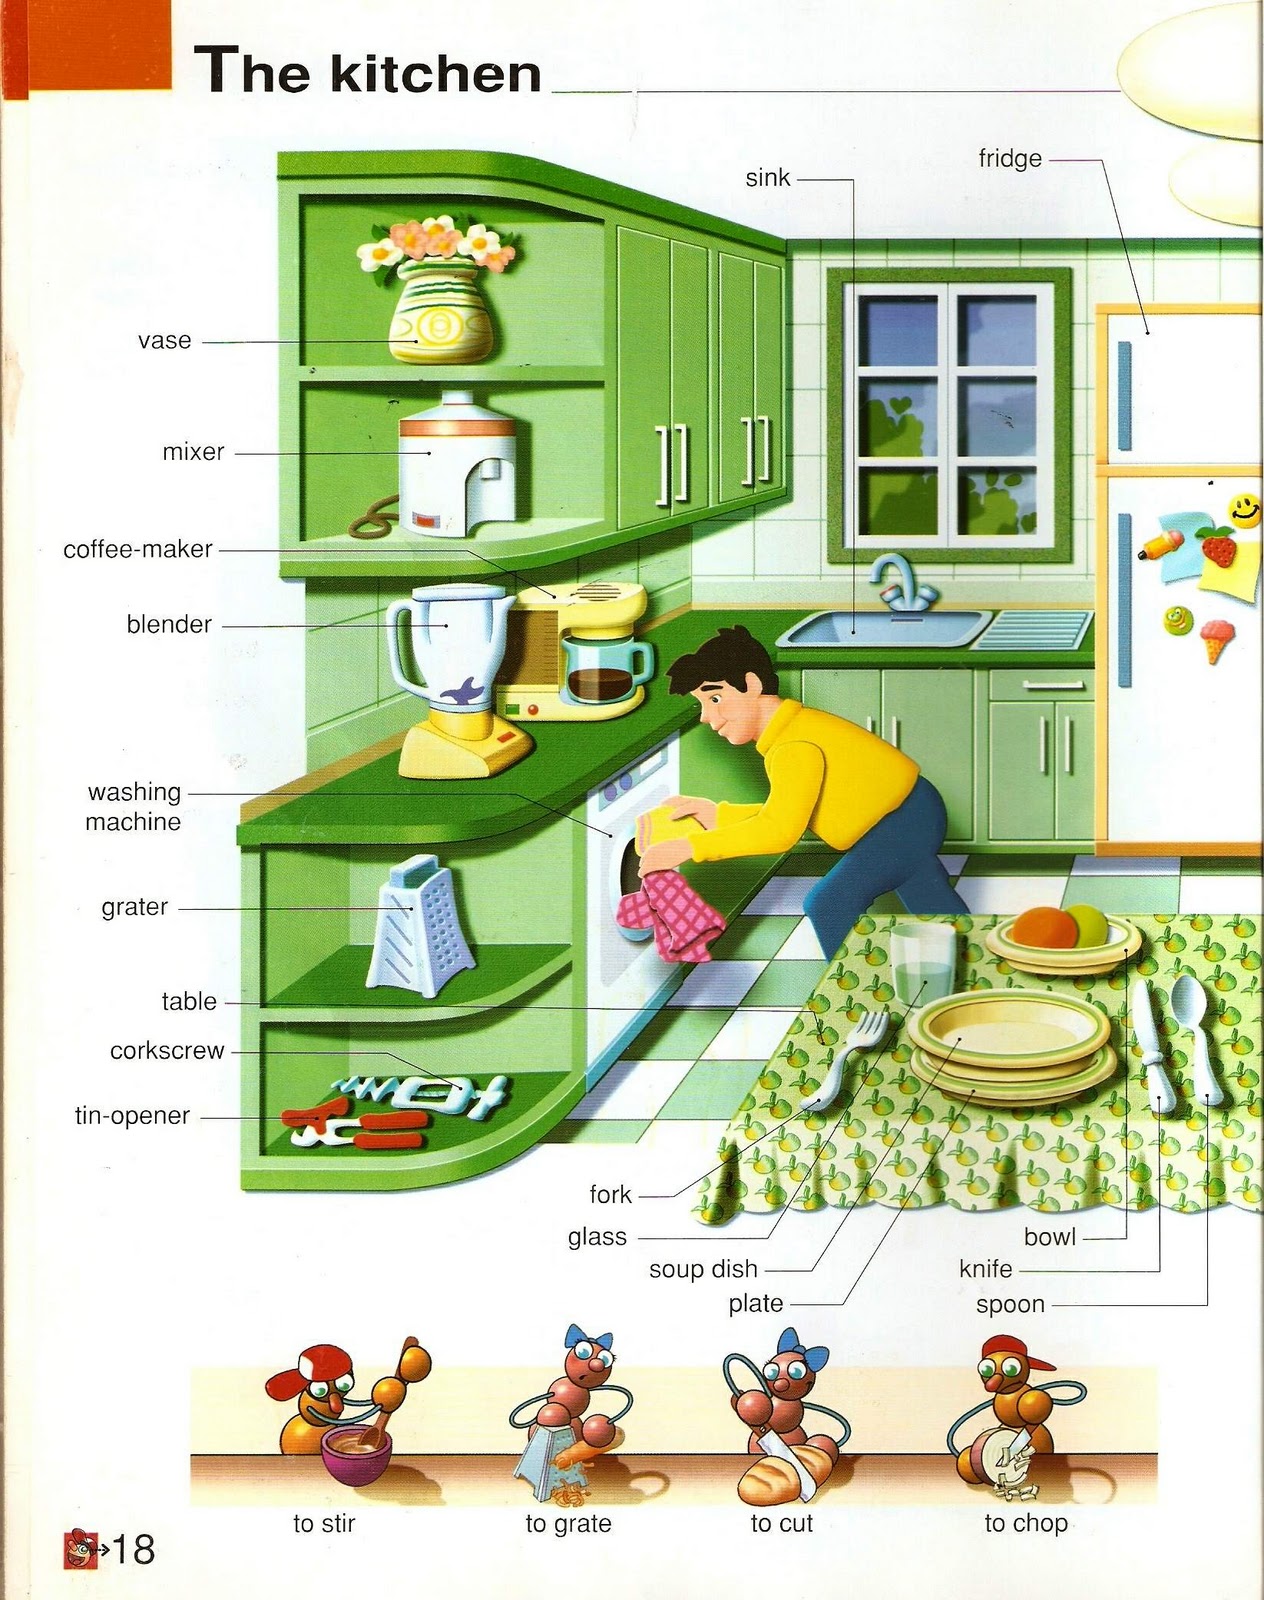 Тема кухня на английском. Мебель кухни на английском языке. Кухонная мебель по английскому языку. Кухня Vocabulary.